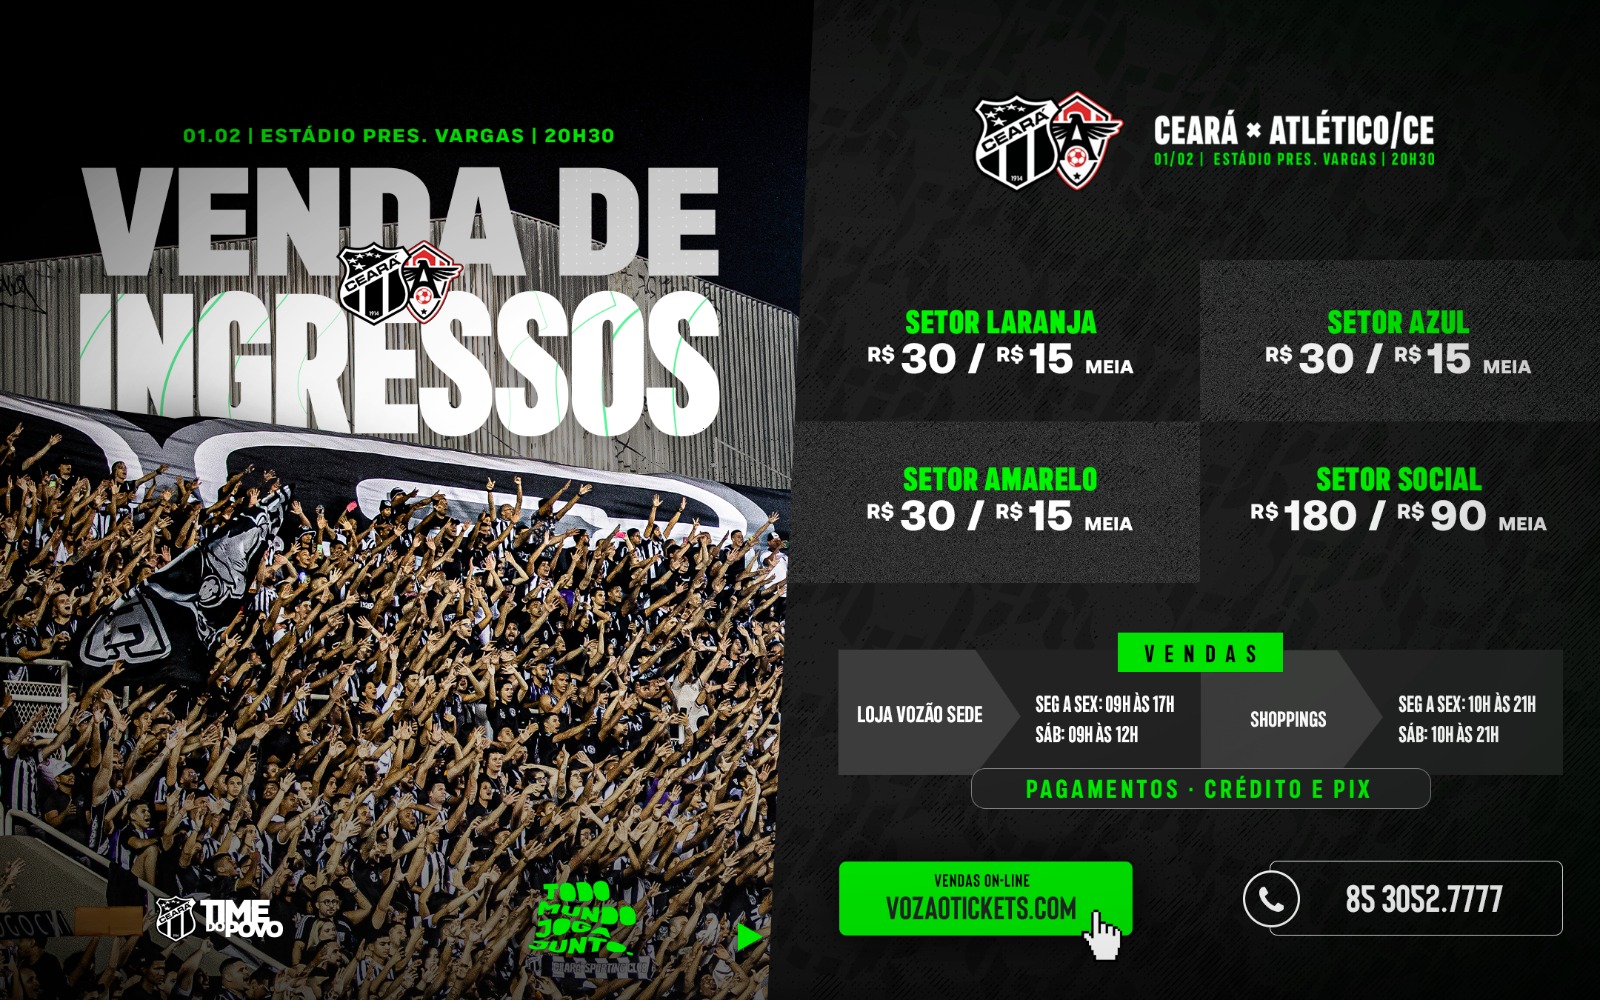 Ingressos disponíveis para a partida entre Ceará e FC Atlético Cearense